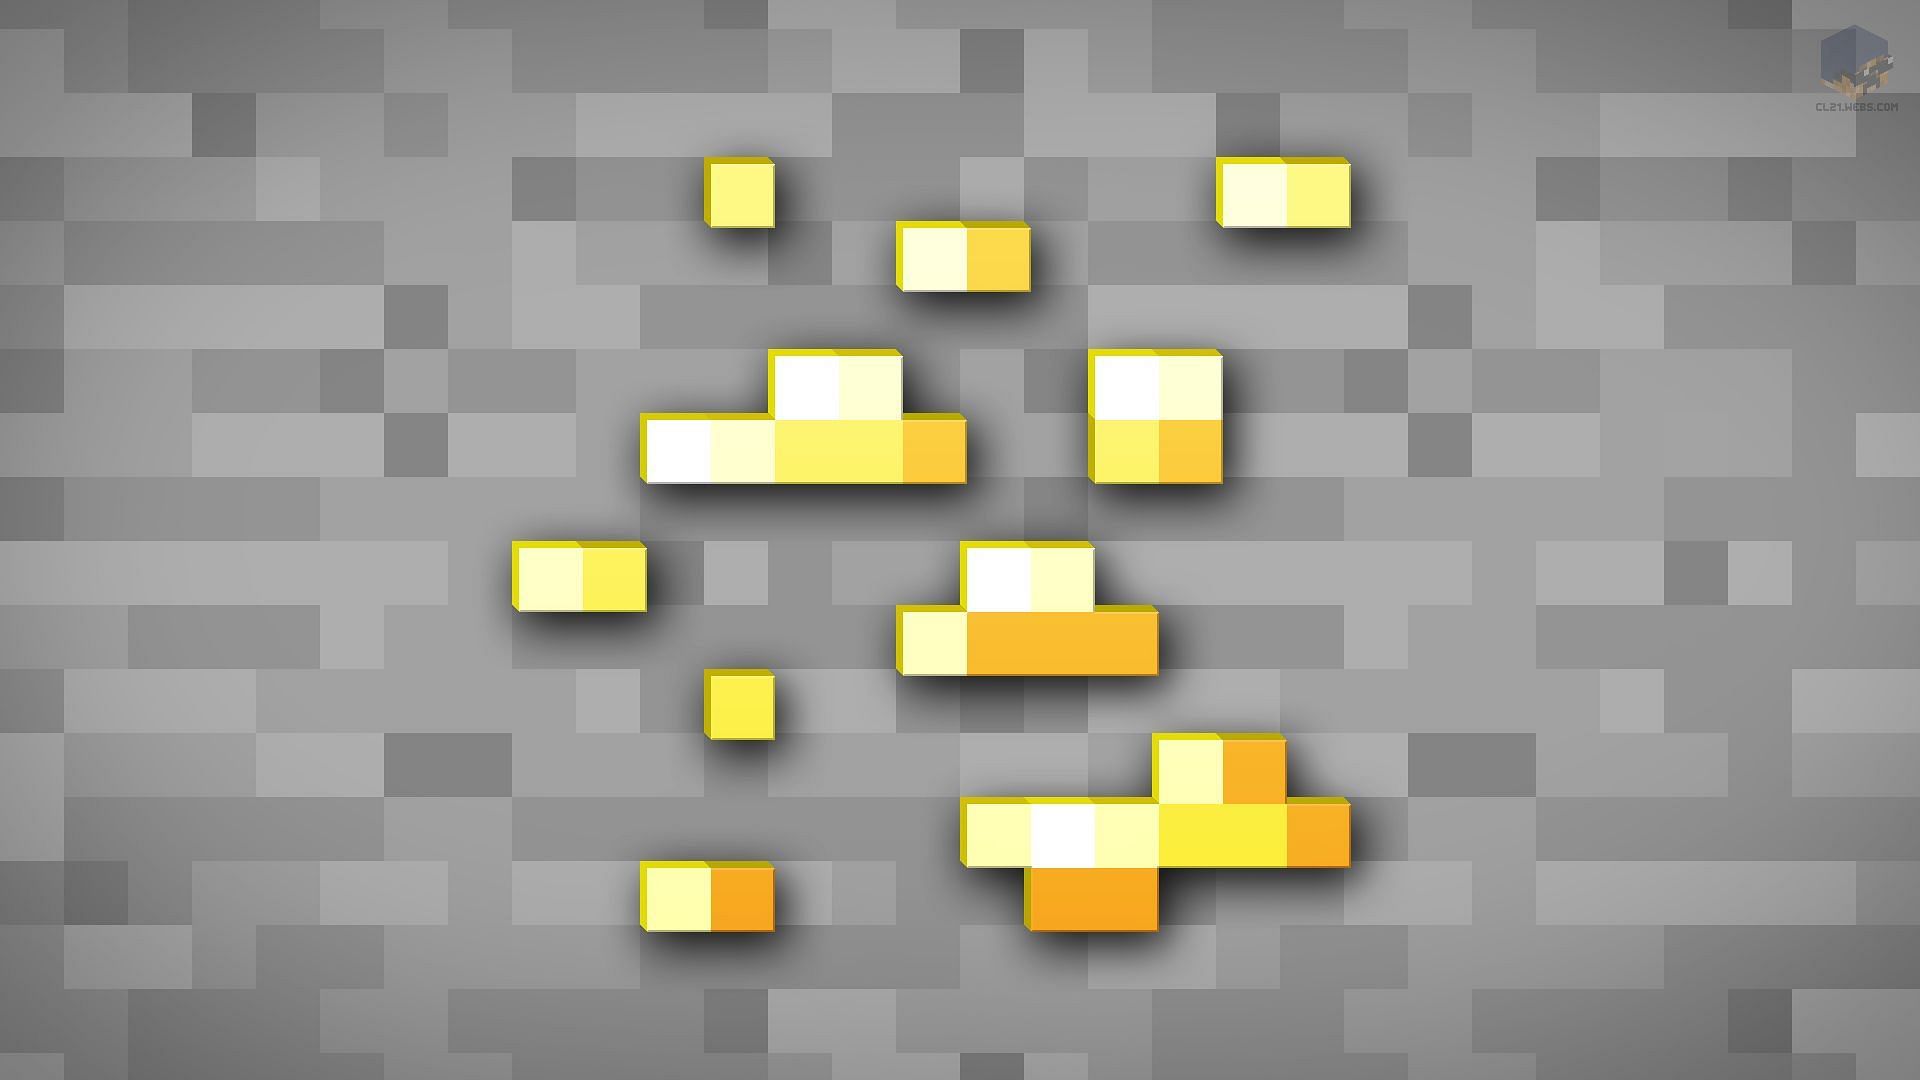 Gold ore in Minecraft (Image via DeviantArt/Minecraft)